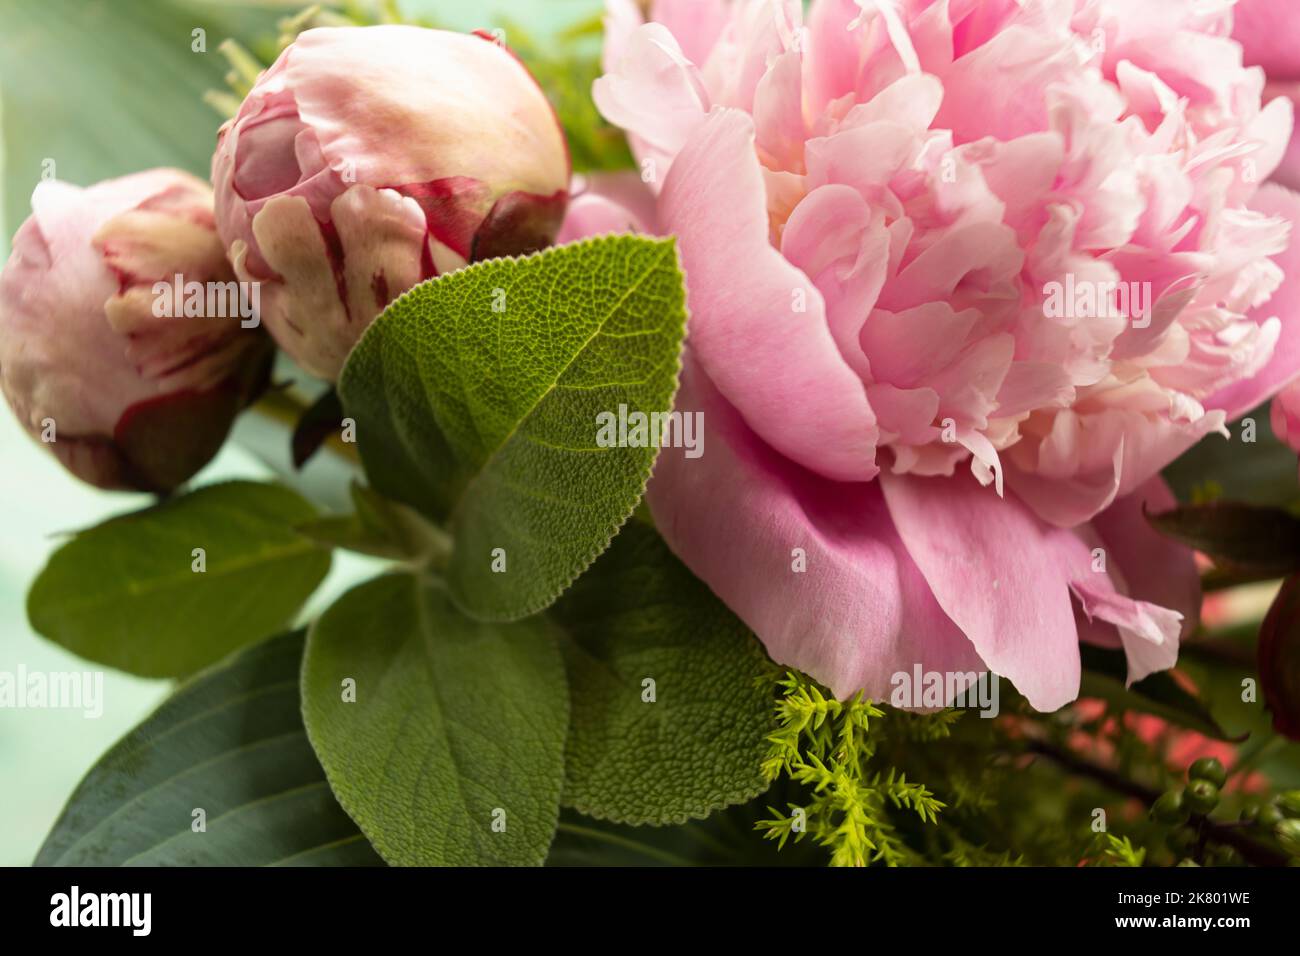 WA22417-00...WASHINGTON - Blätter und Blumen in einem Blumenarrangement fotografiert mit einem Lensbaby Velvet 35. Stockfoto